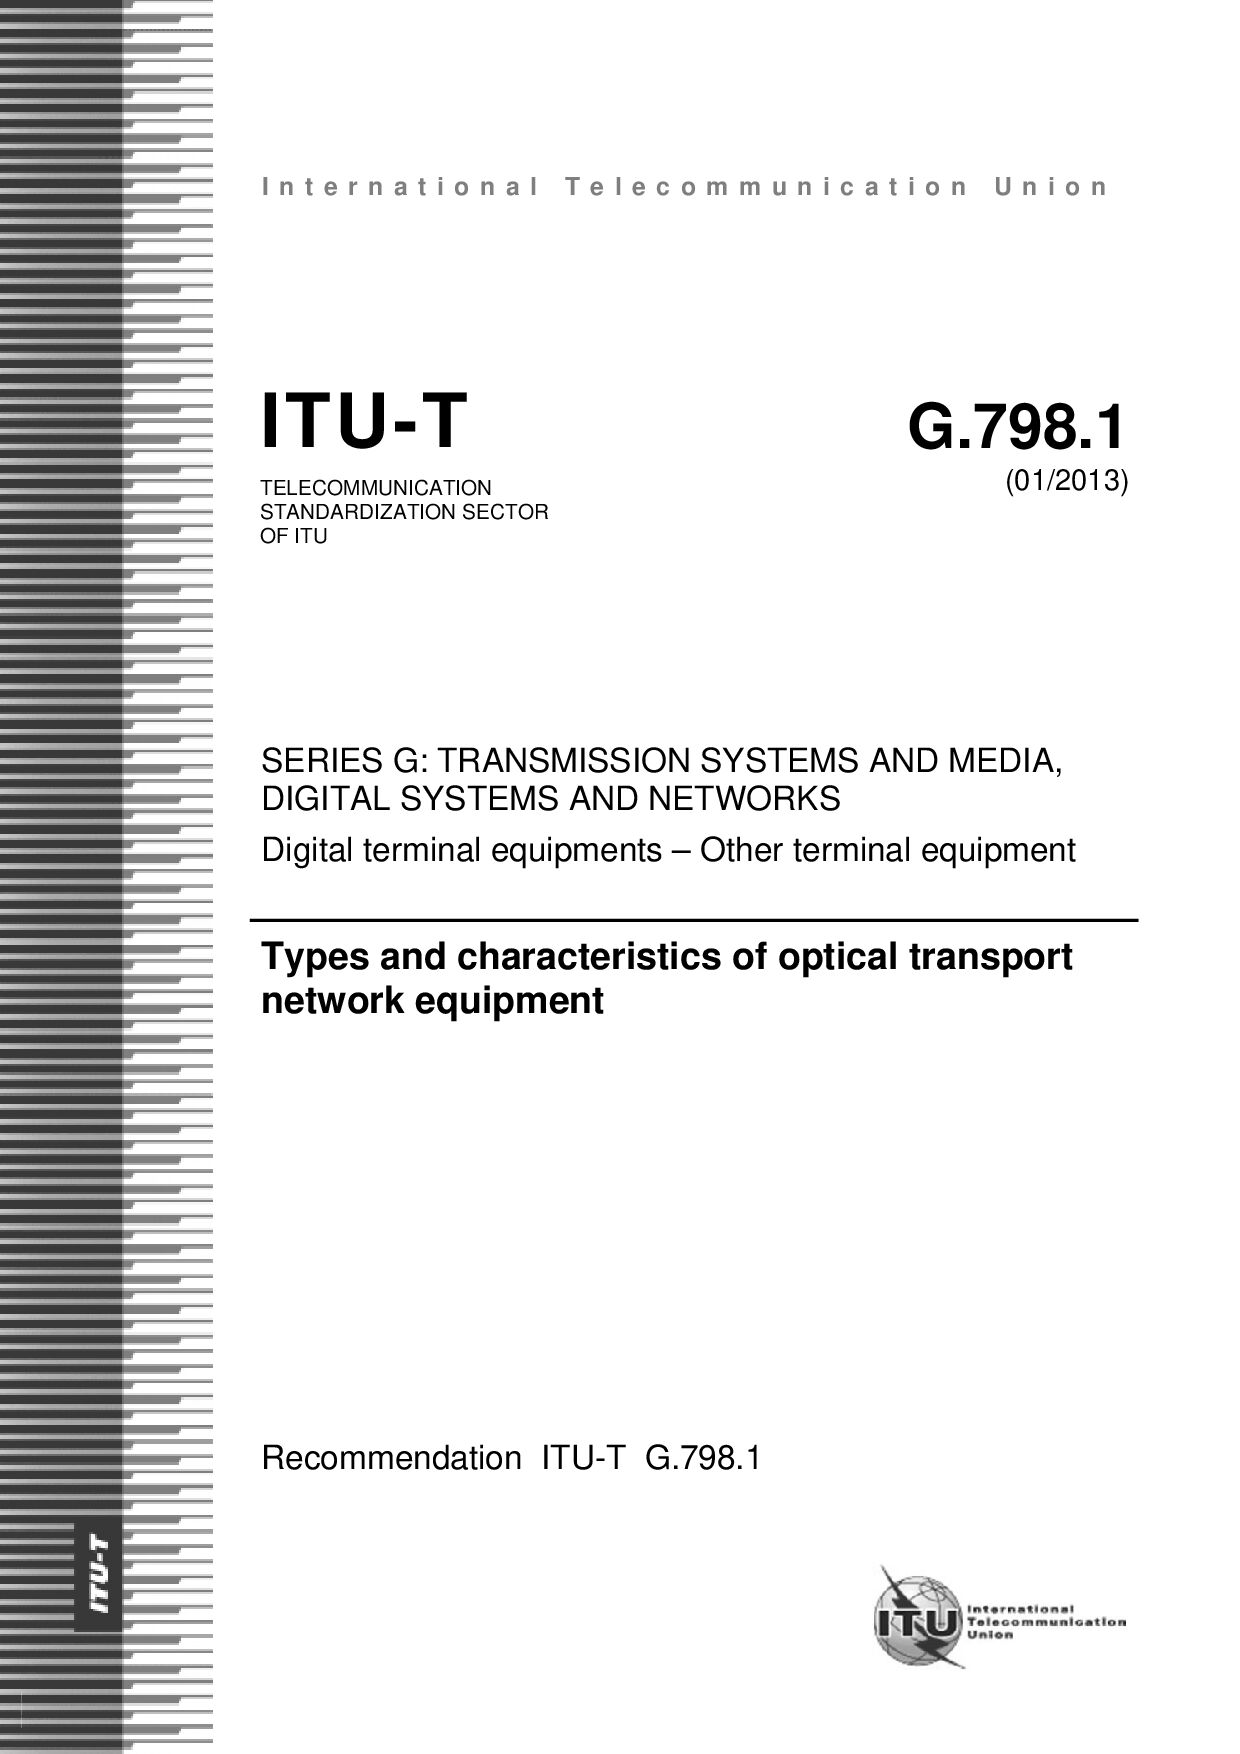 ITU-T G.798.1-2013